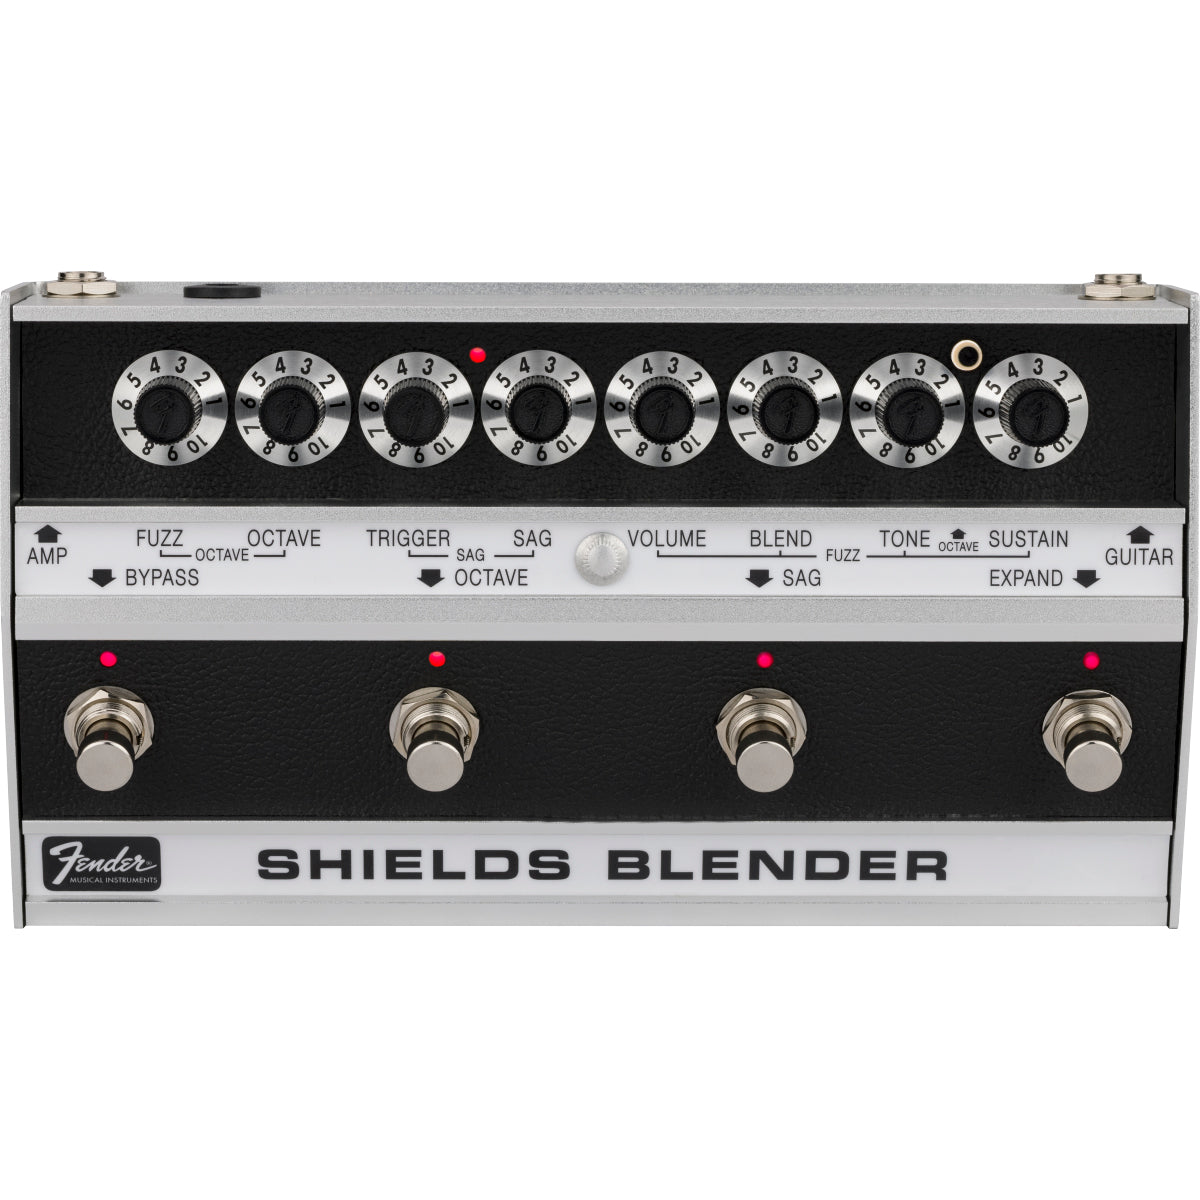 Fender Shields Blender Pedal, View 1